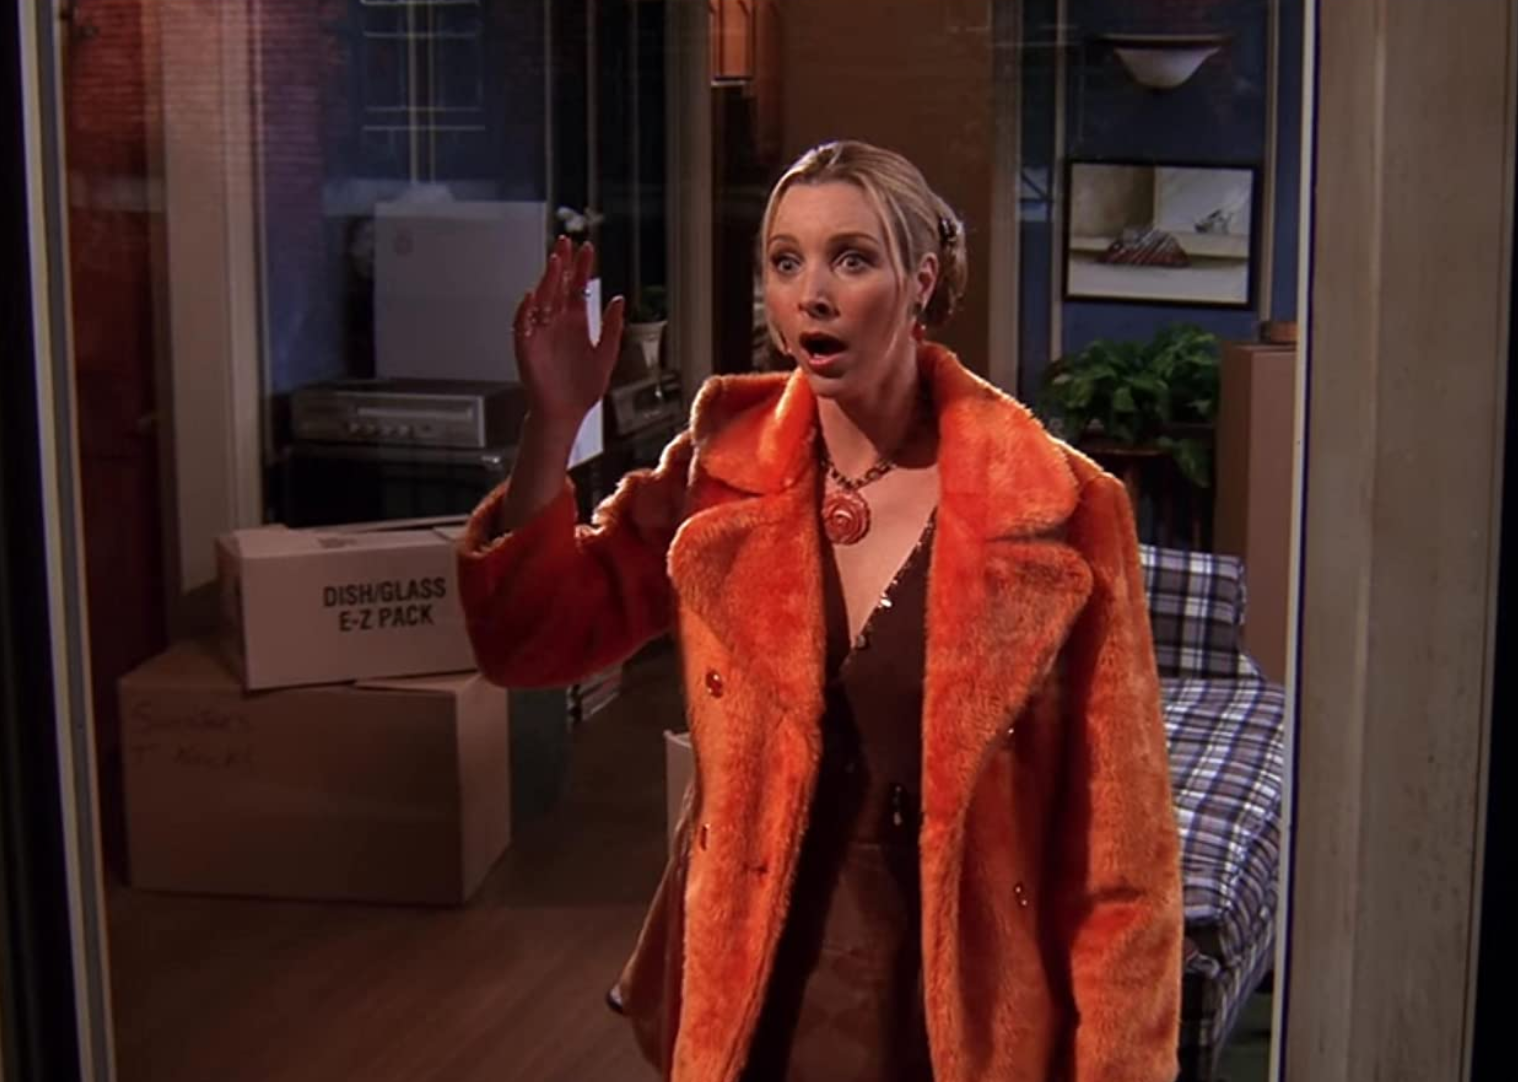 Lisa Kudrow in an orange furry coat looking surprised.